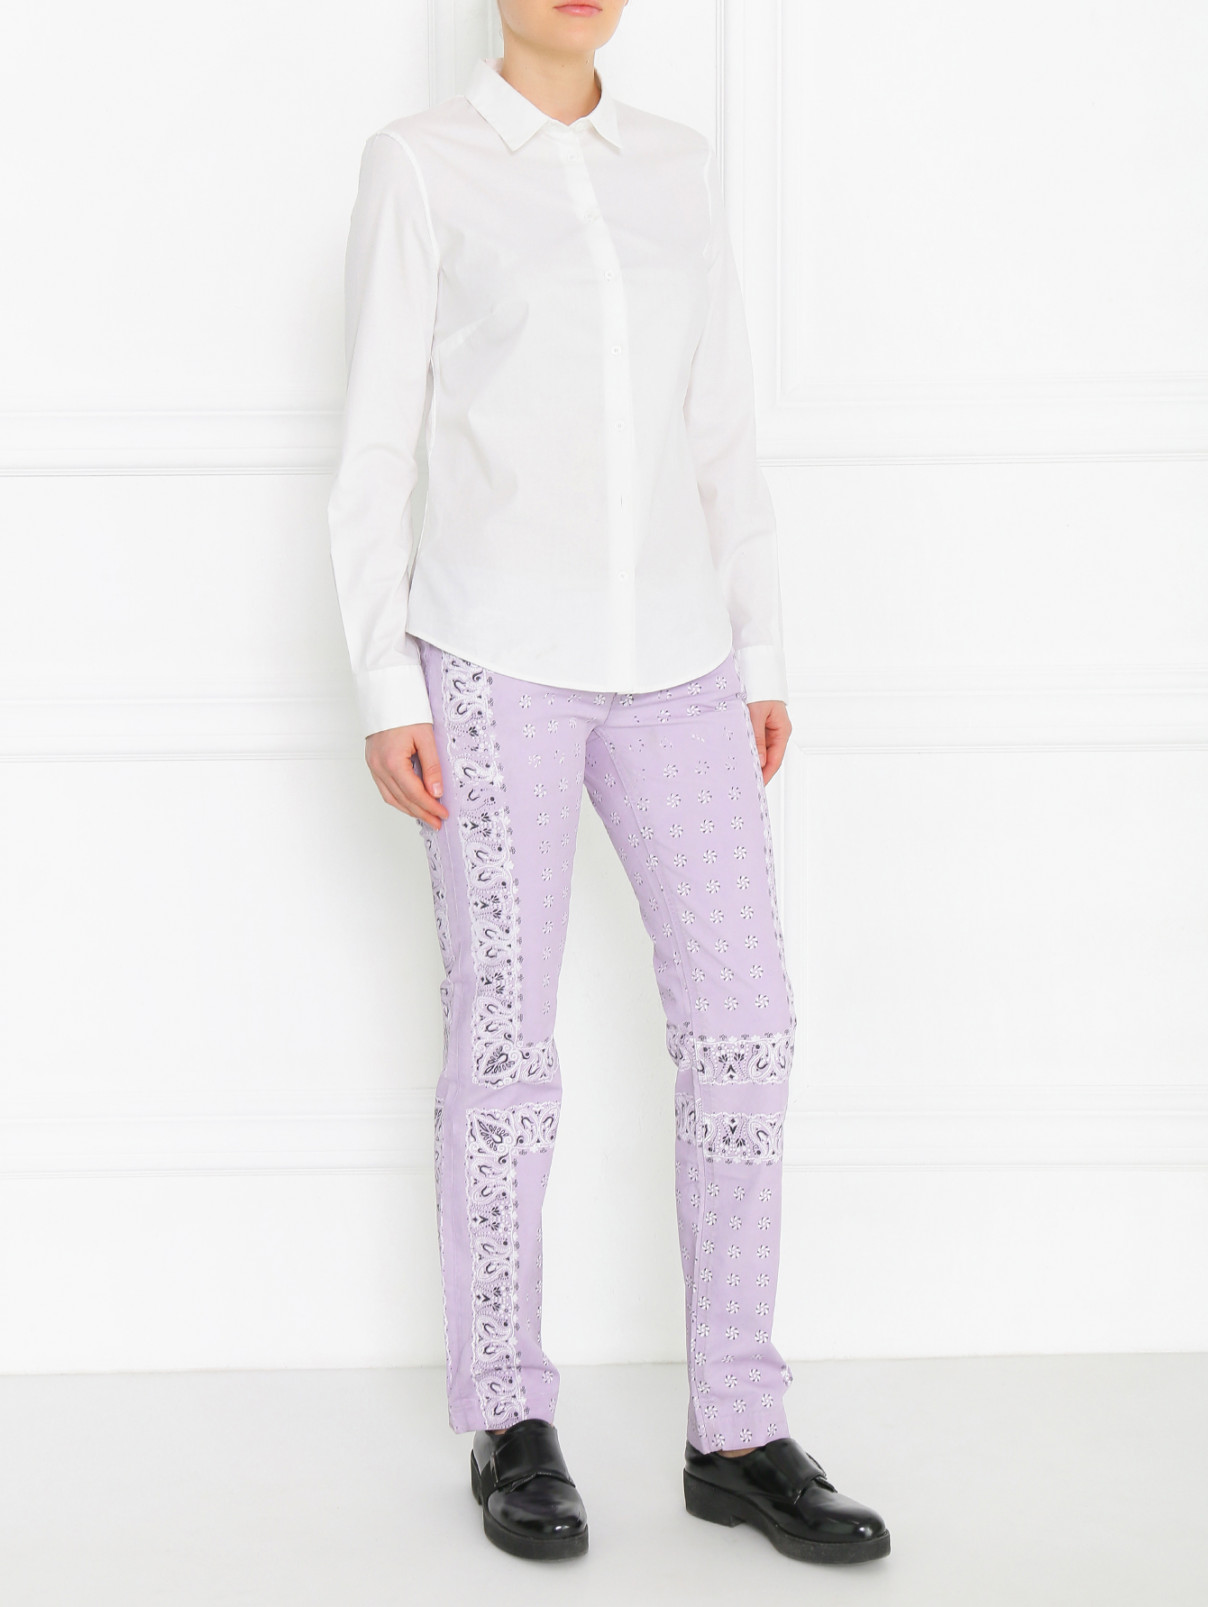 Брюки из хлопка с узором Dolce & Gabbana  –  Модель Общий вид  – Цвет:  Фиолетовый